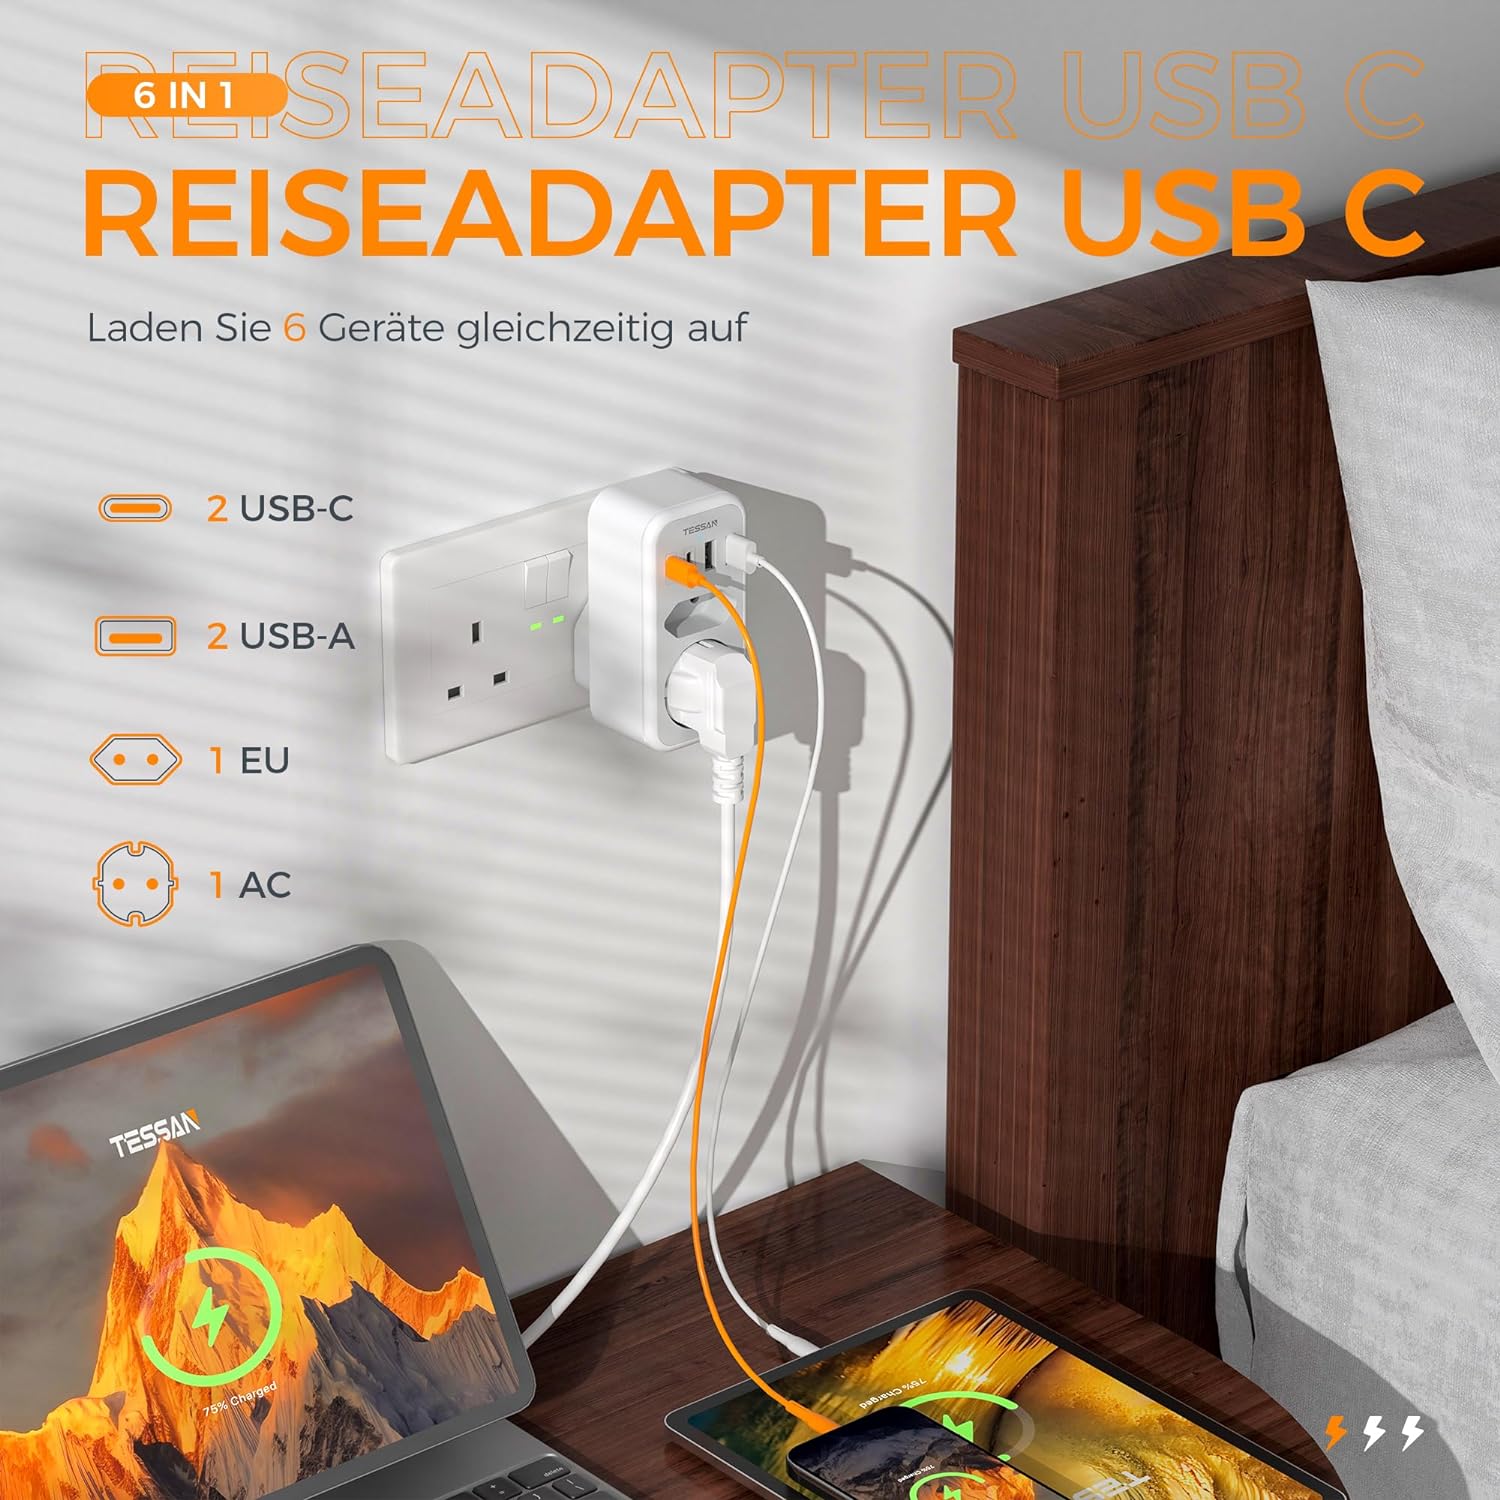 TESSAN 6 in 1 Reiseadapter UK mit 2 USB C und 2 USB A,Typ G